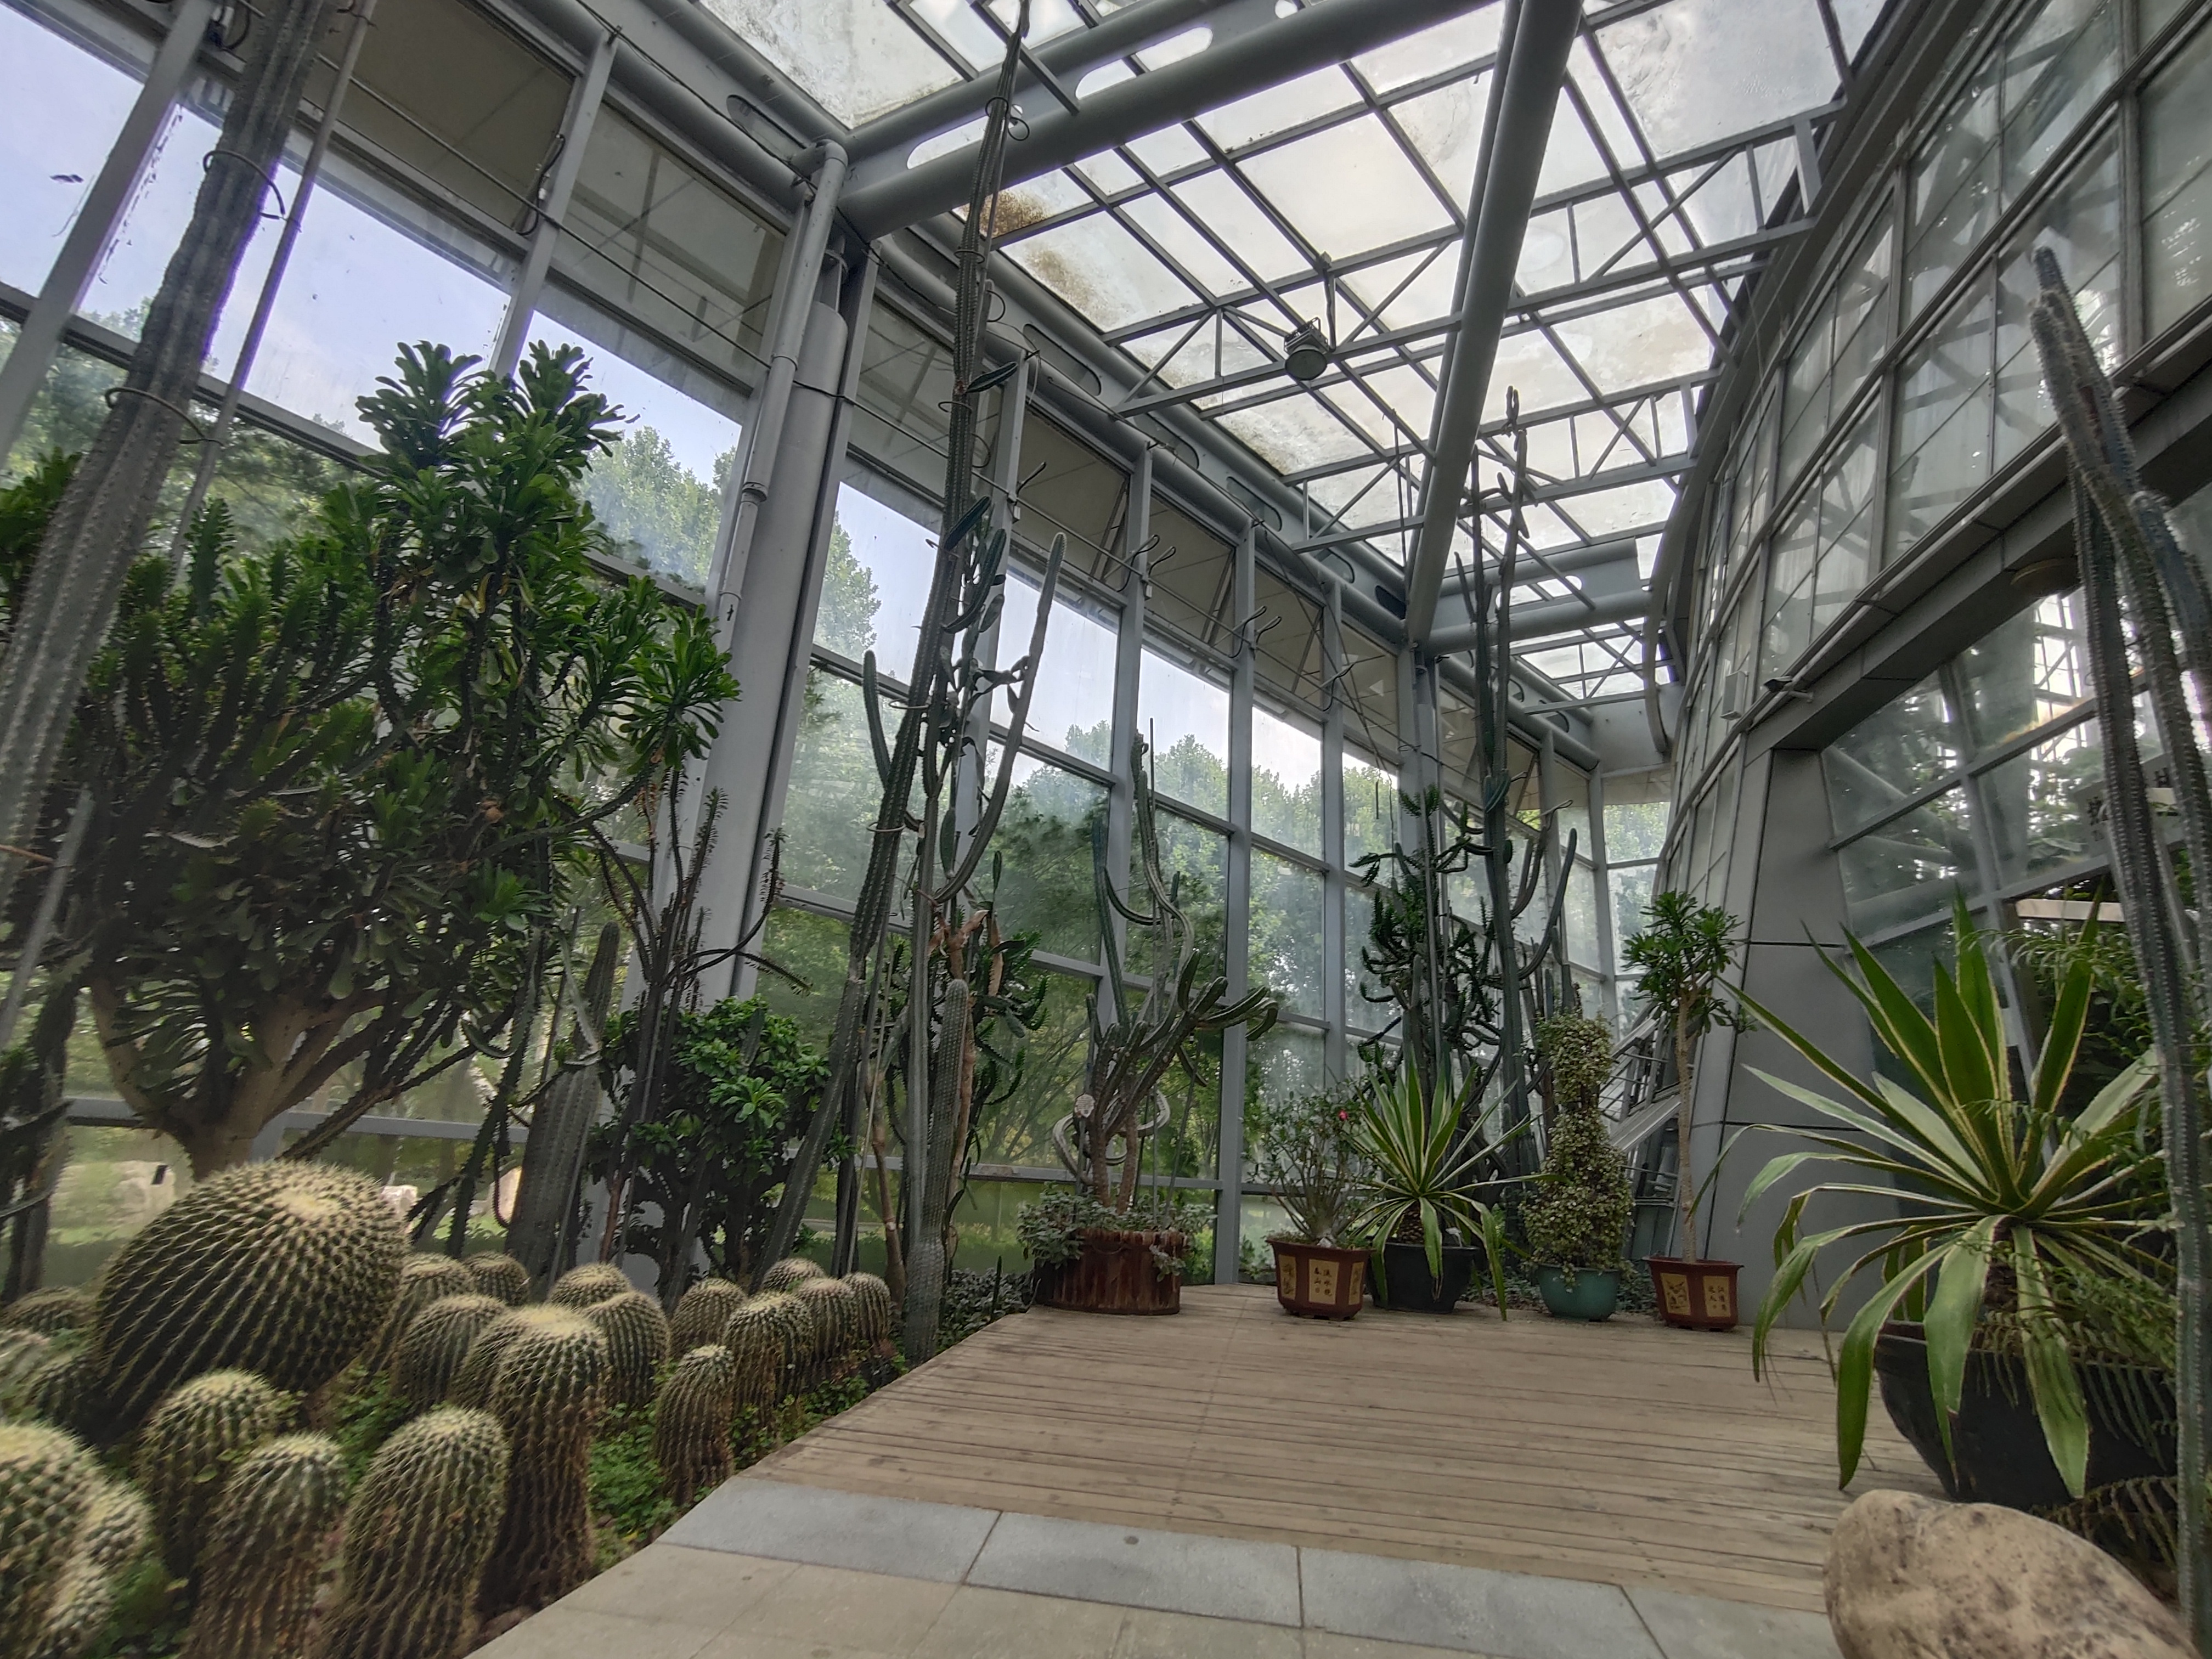 廊坊热带雨林植物园图片